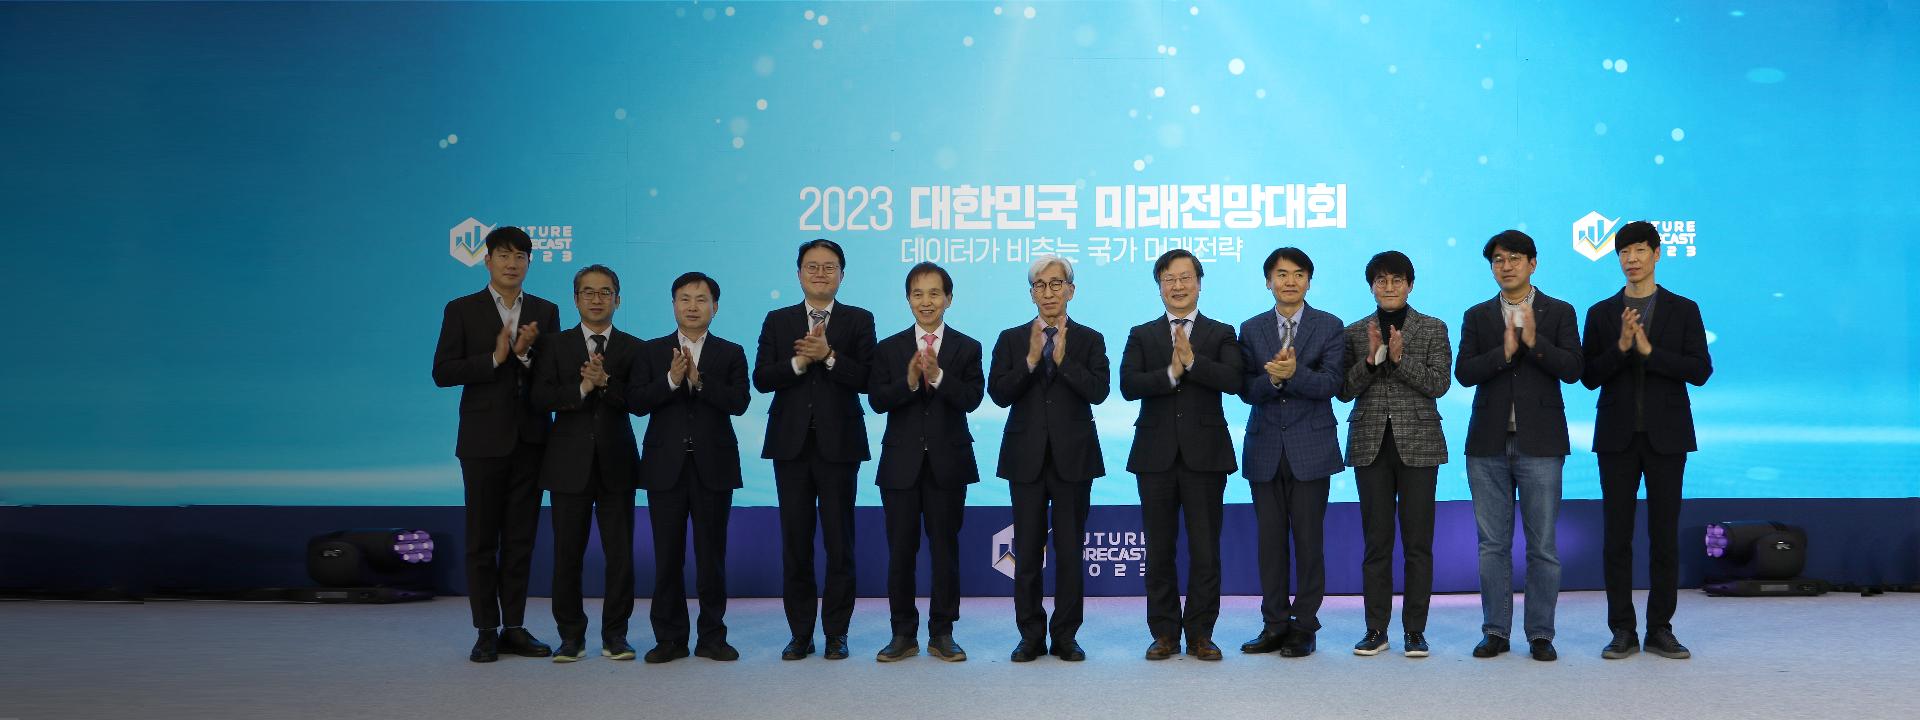 2023 대한민국 미래전망대회 개최